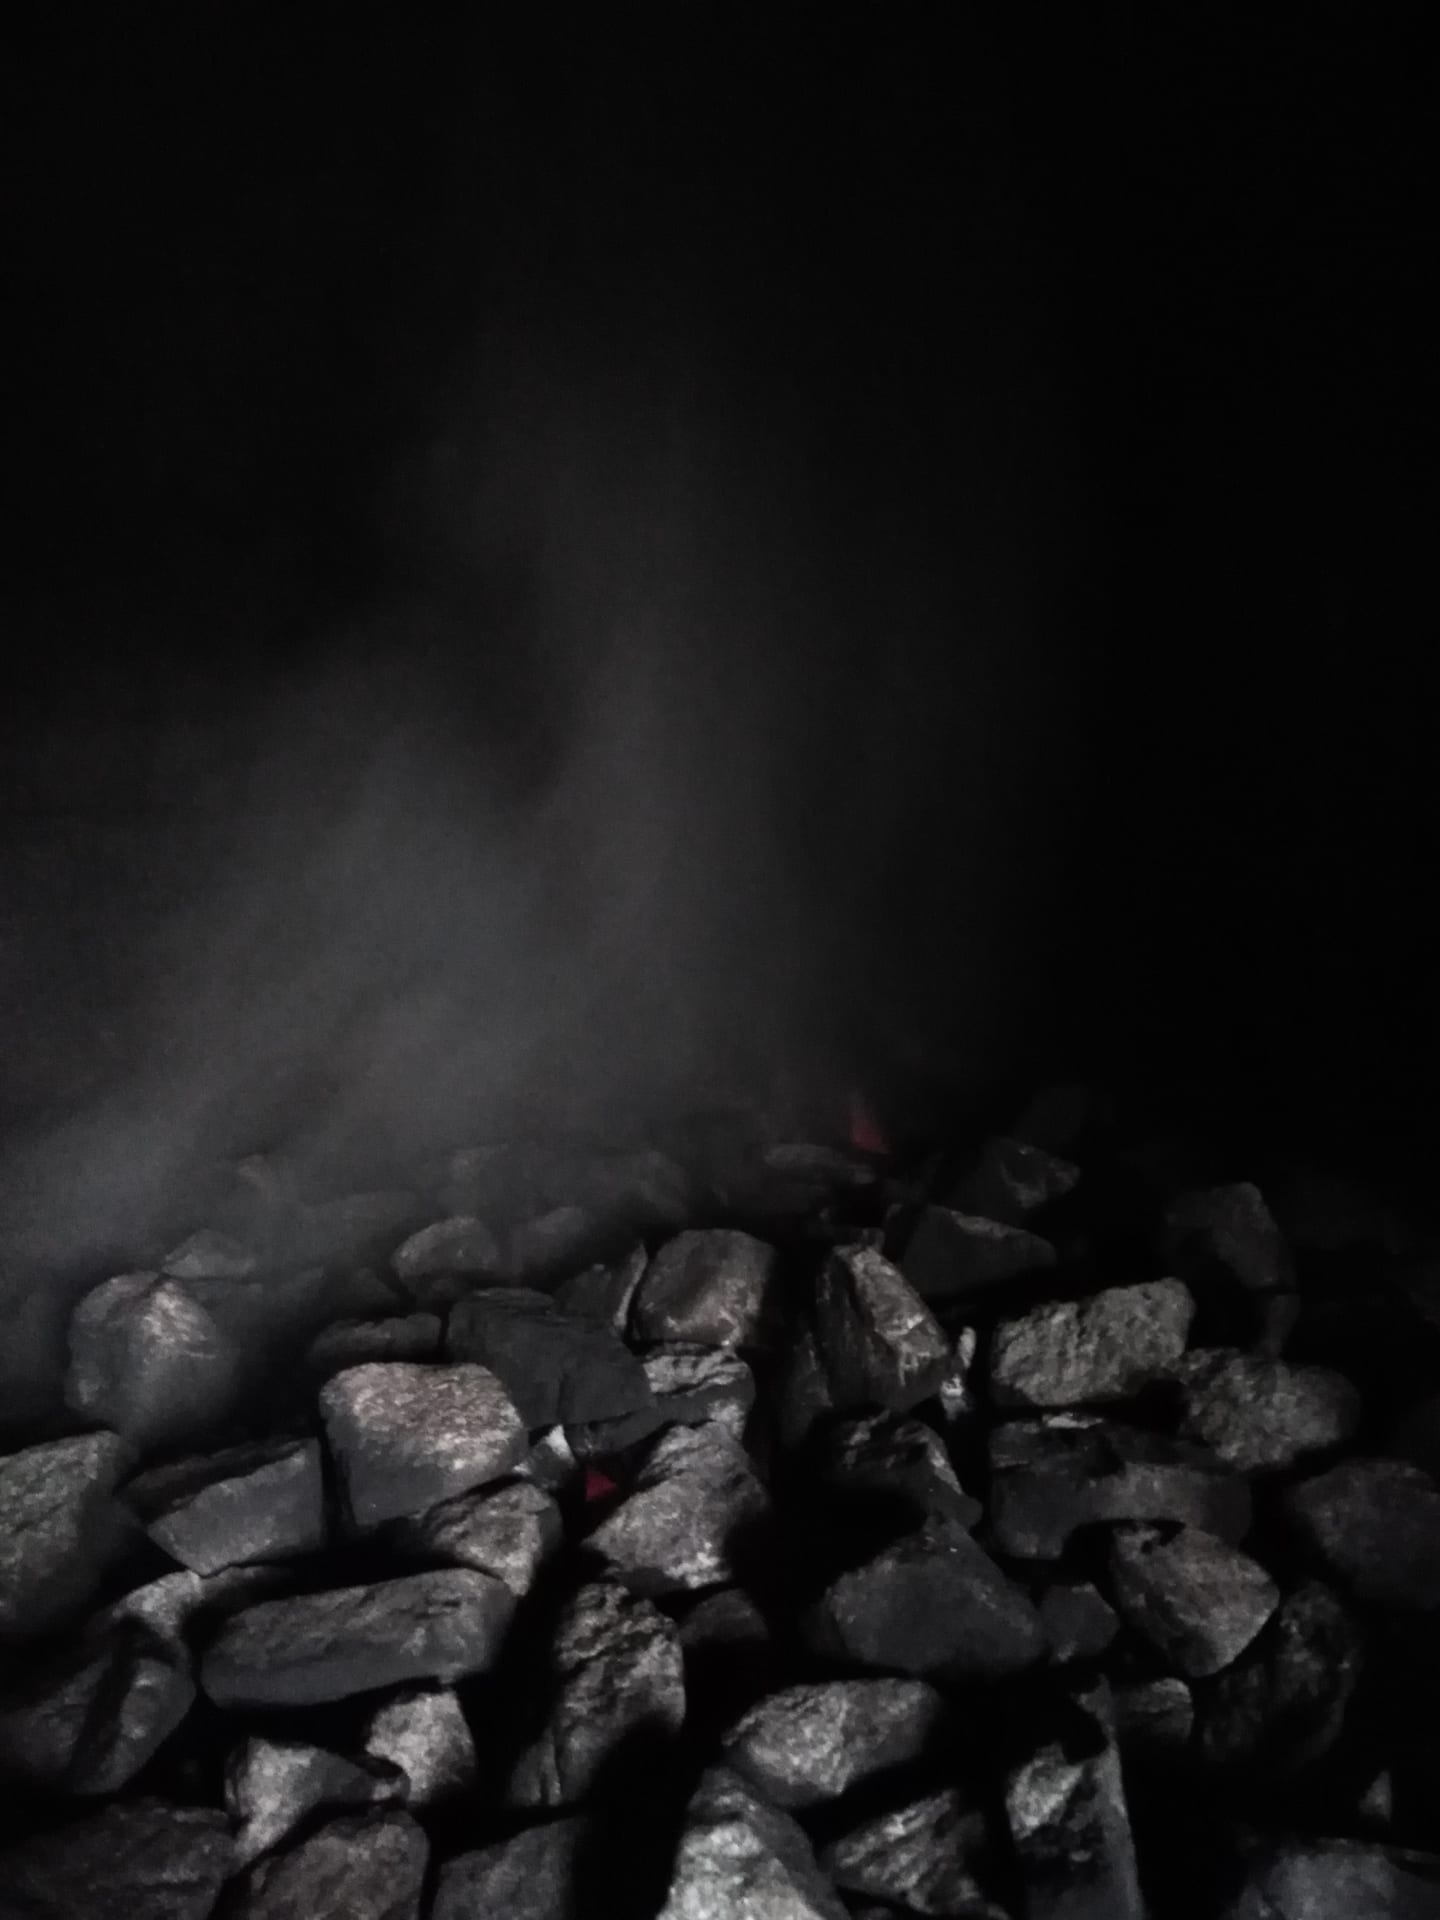 Mystical smoke sauna stones.